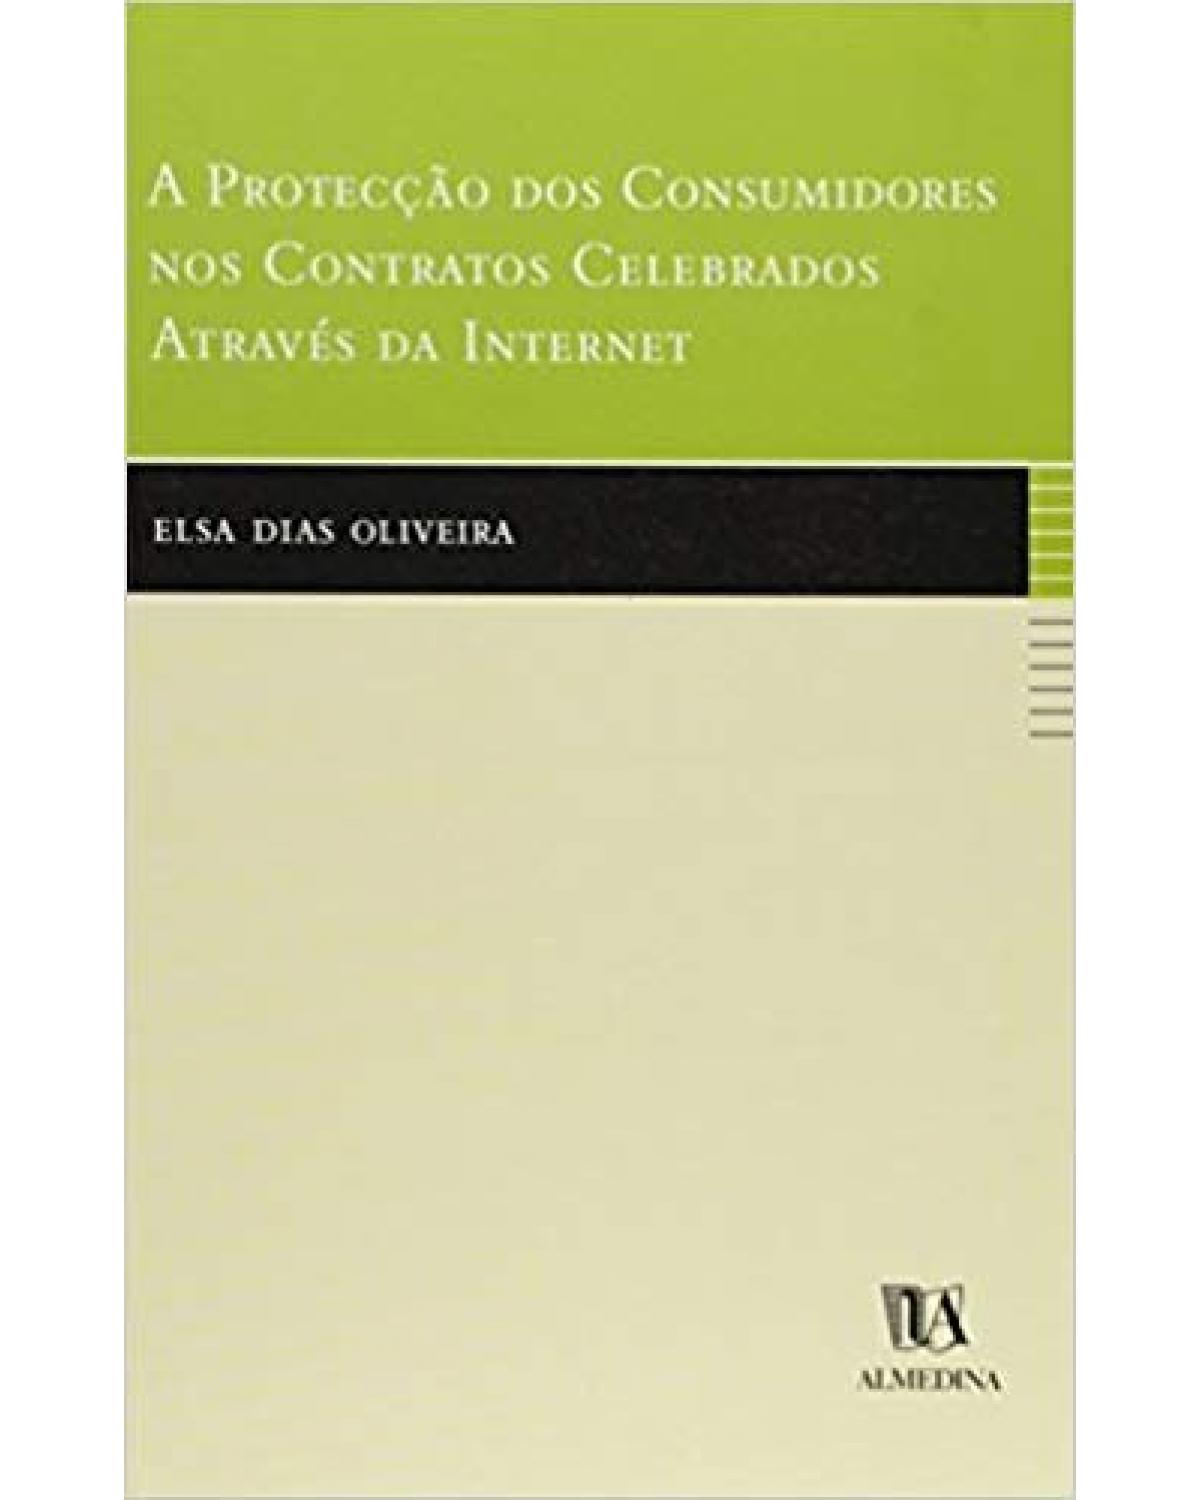 A protecção dos consumidores nos contratos celebrados através da internet - 1ª Edição | 2002